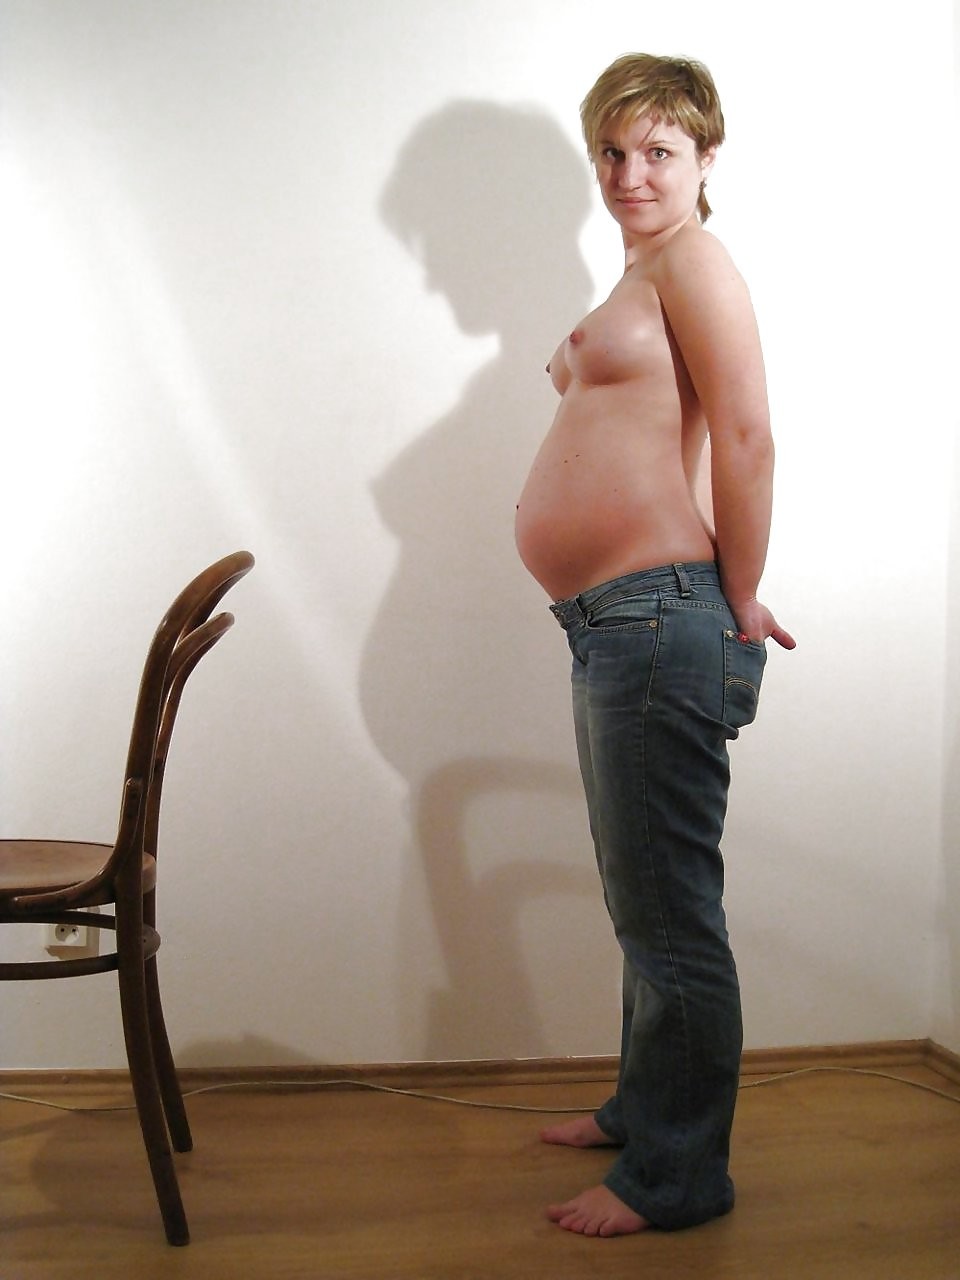 Сучки беременные фото